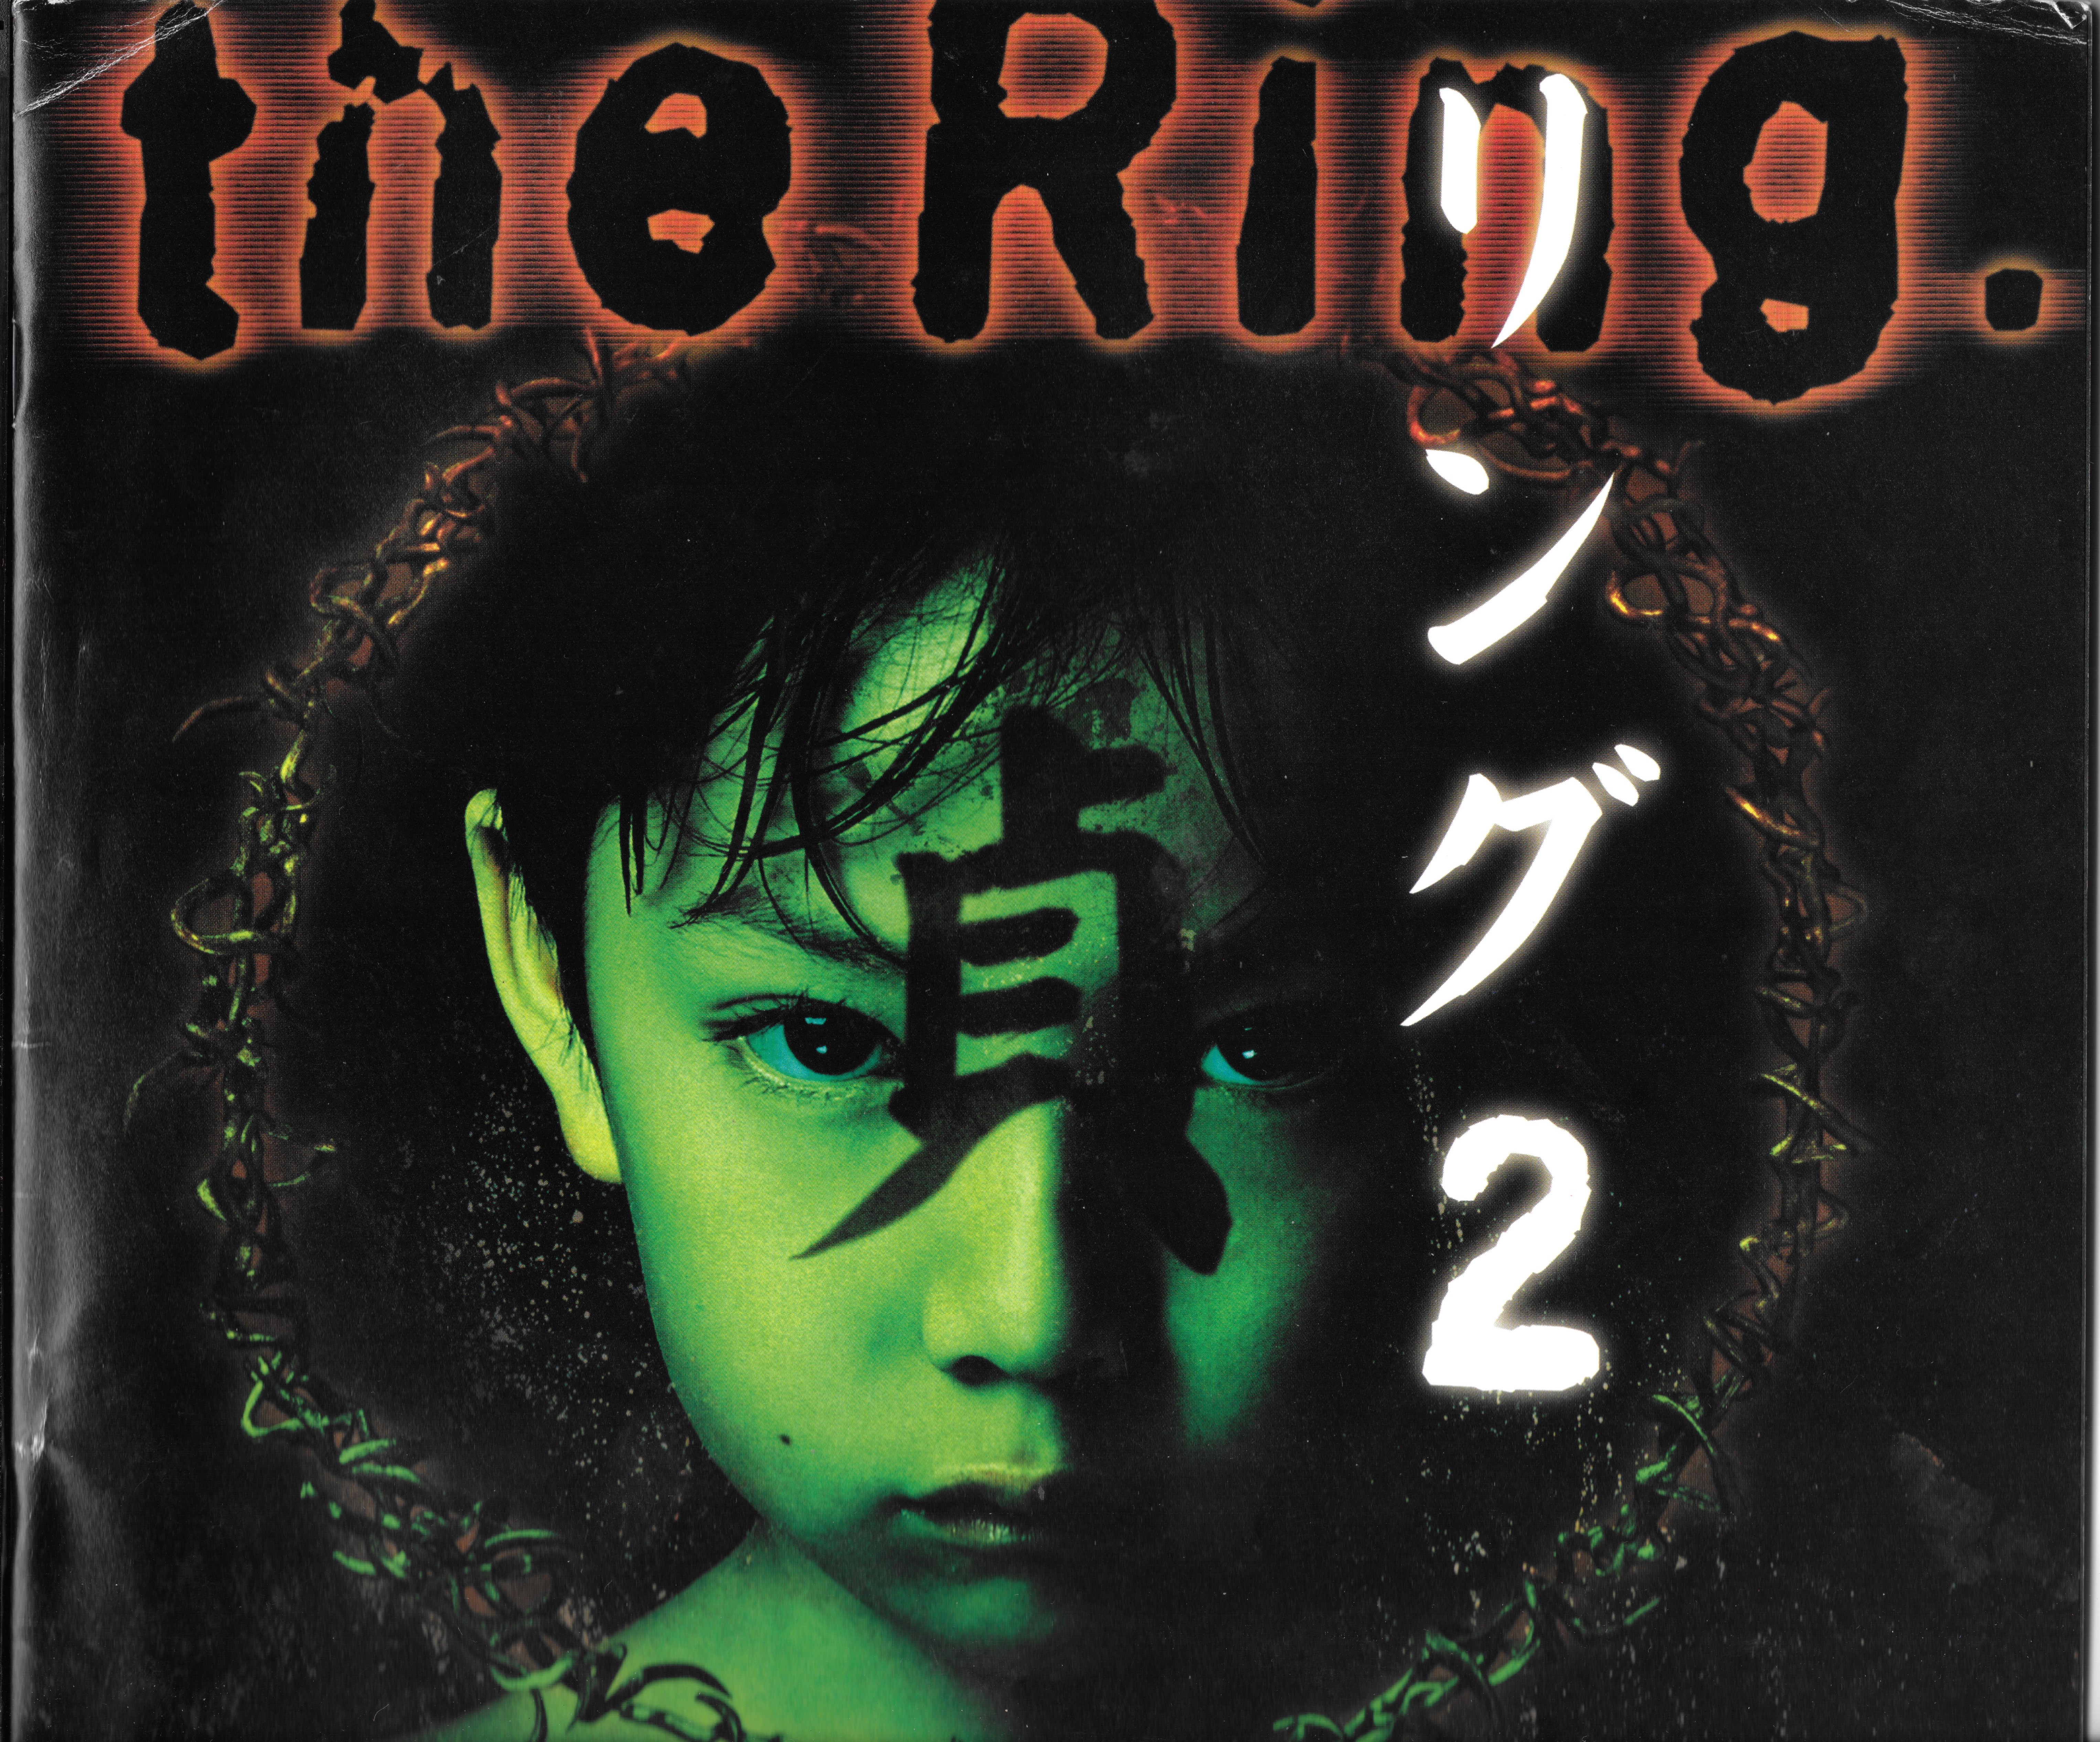 Ringu (1998) - IMDb